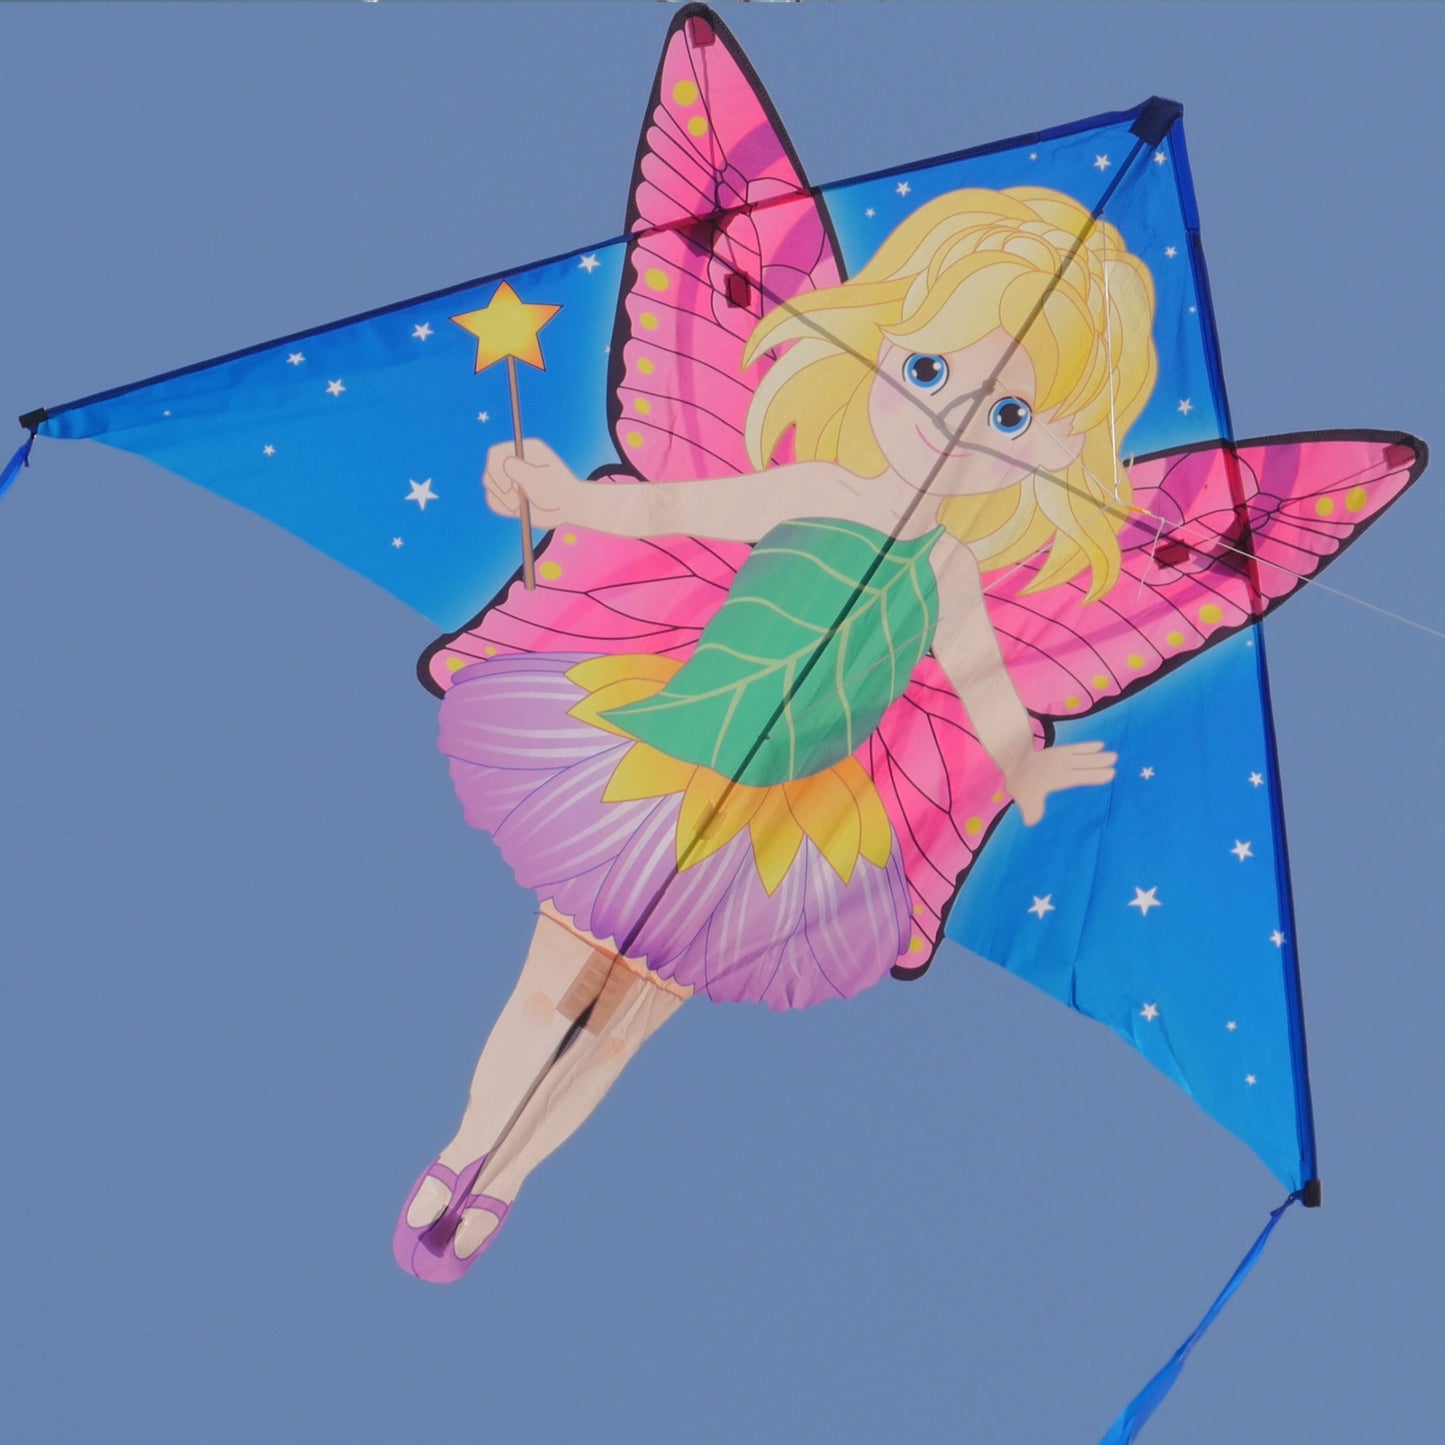 windnsun delta xt fairy nylon kite flying